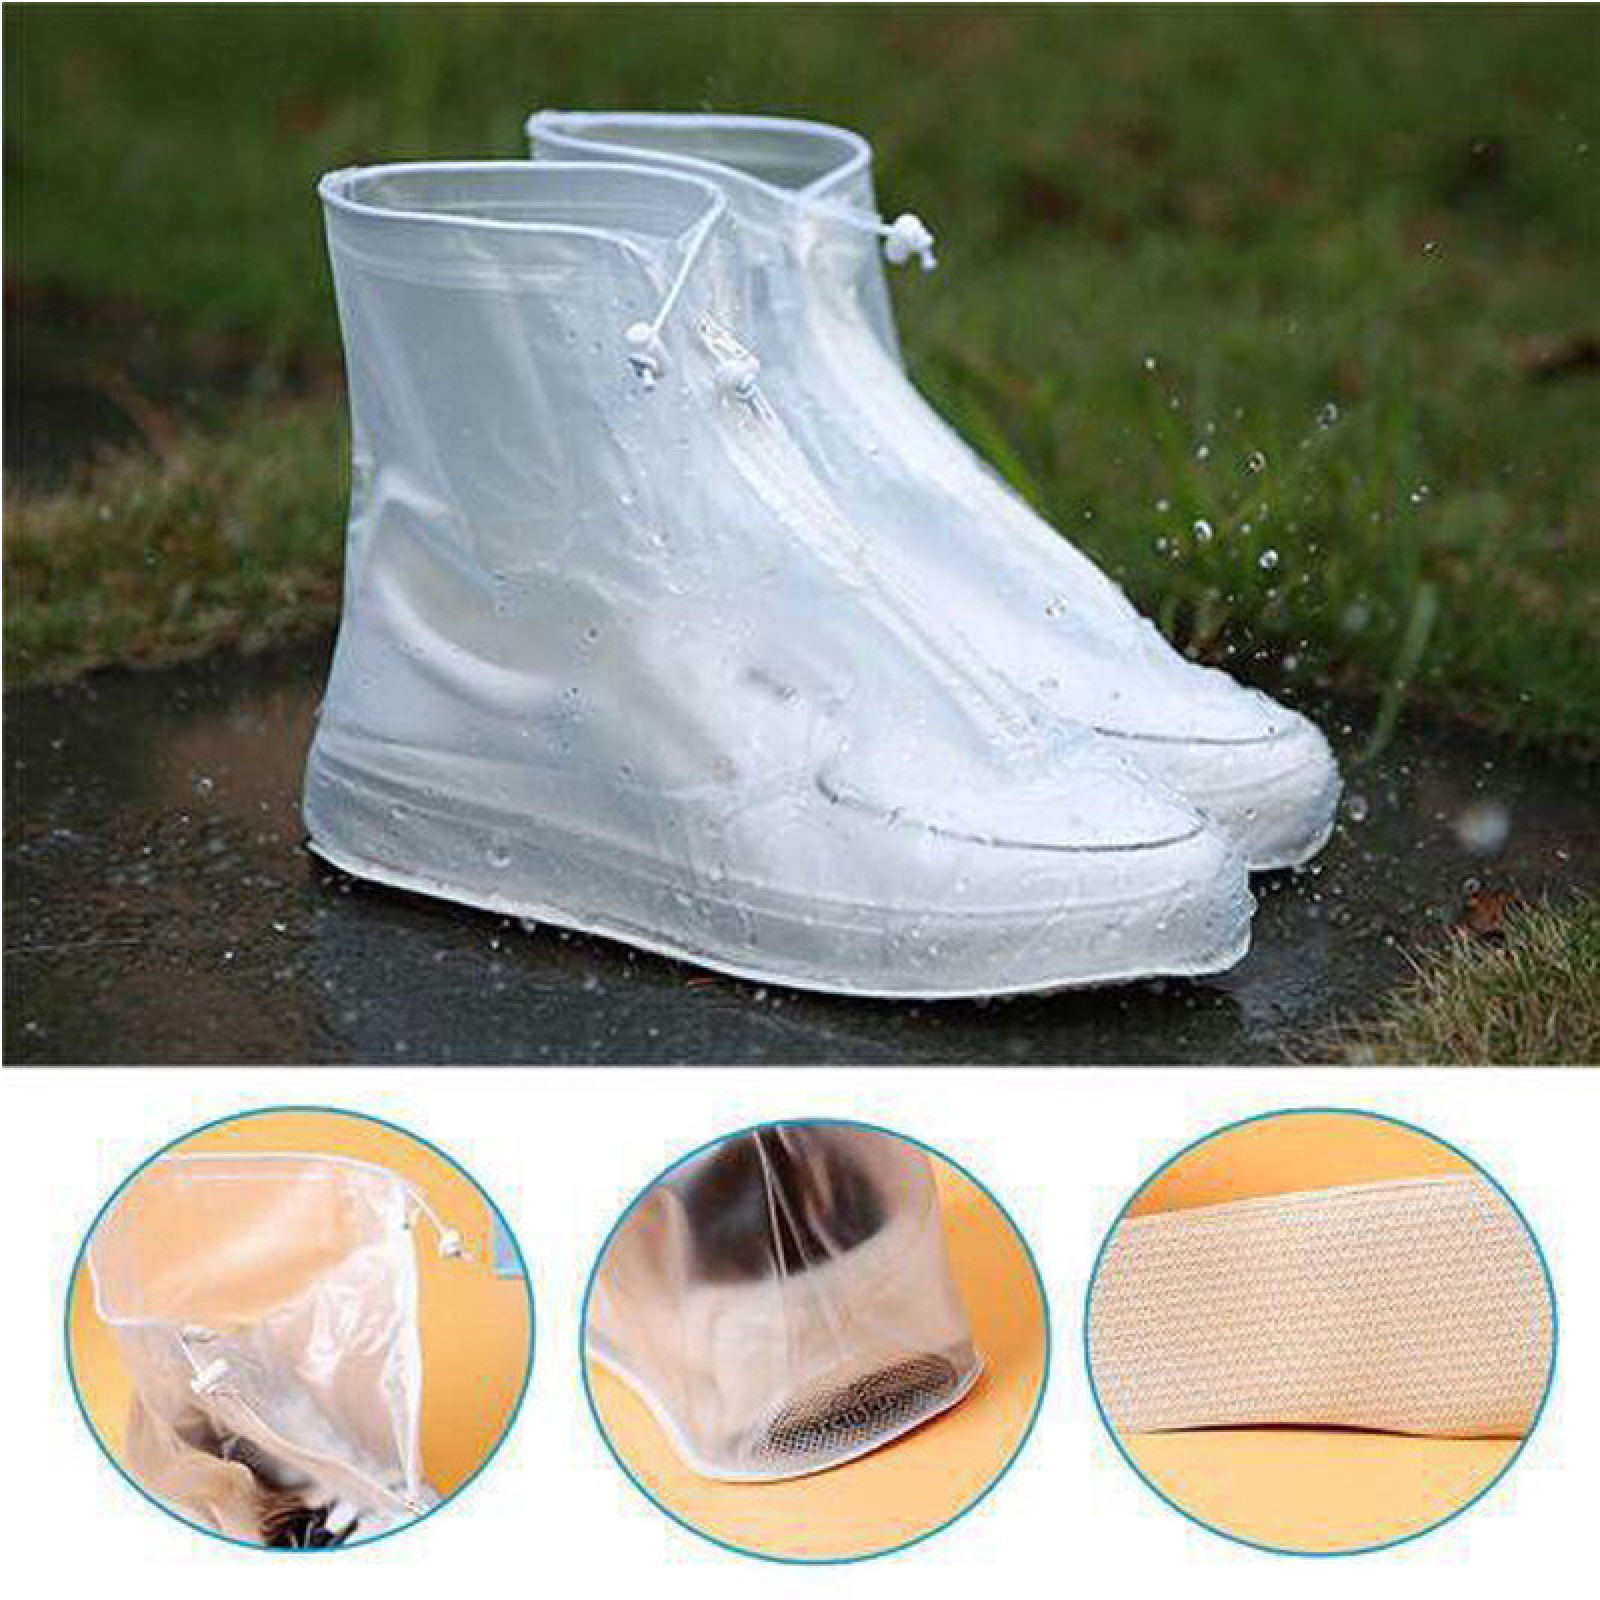 Дождевики для обуви, бахилы от дождя, чехлы для обуви Белые Размер S 183556